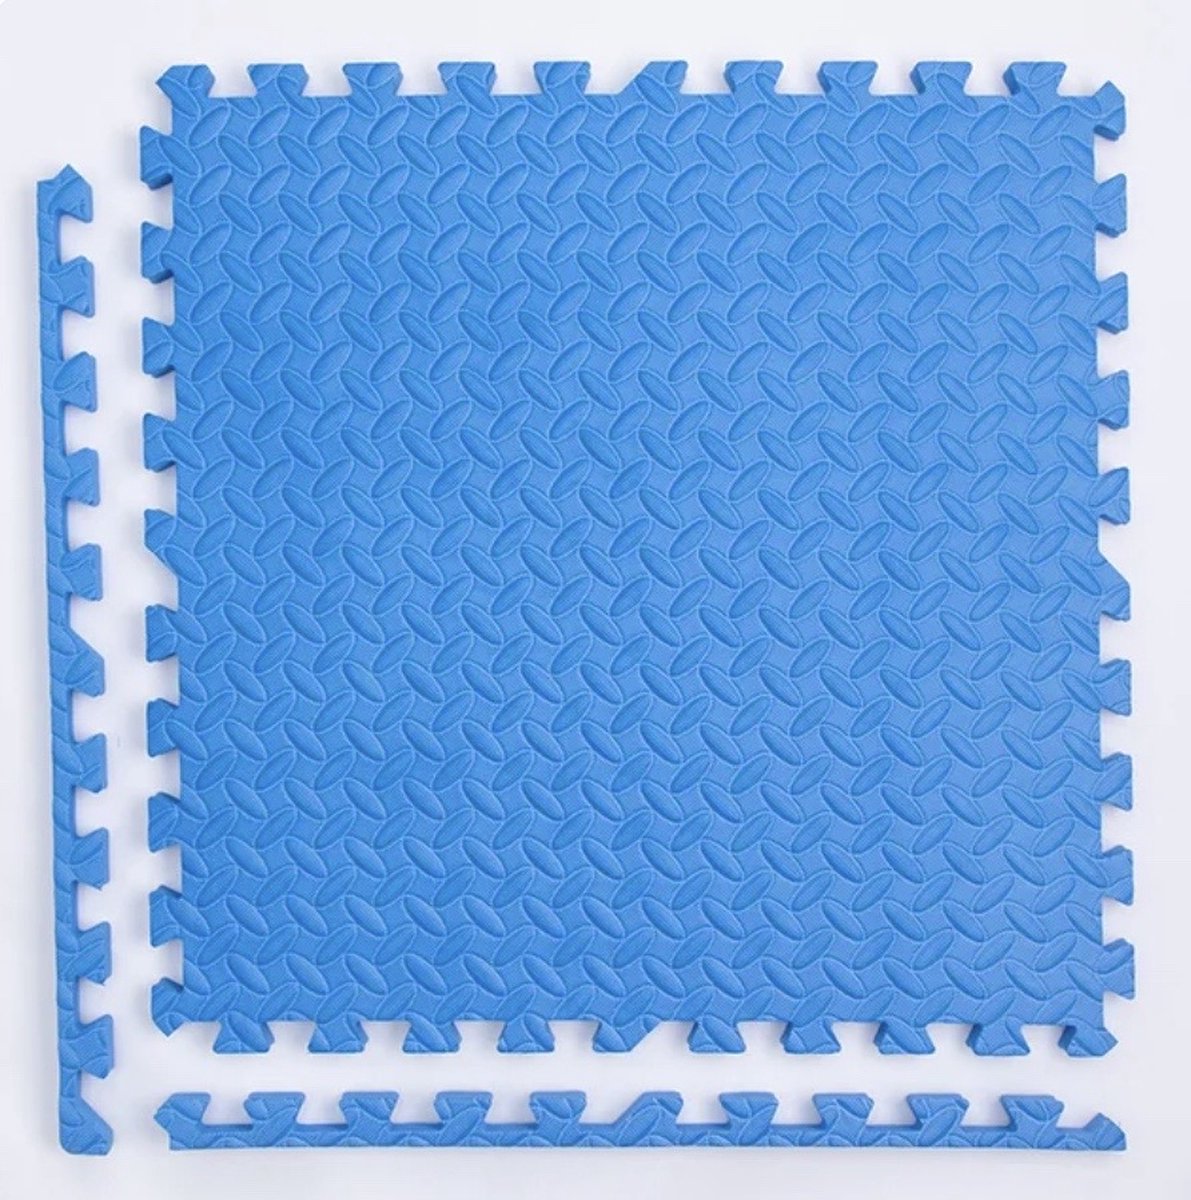 Covie Puzzel mat 30x30cm 16 stuks Tegels voor kinderen Speelmat Speelkleed Kinderplezier Leerzaam Licht Blauw